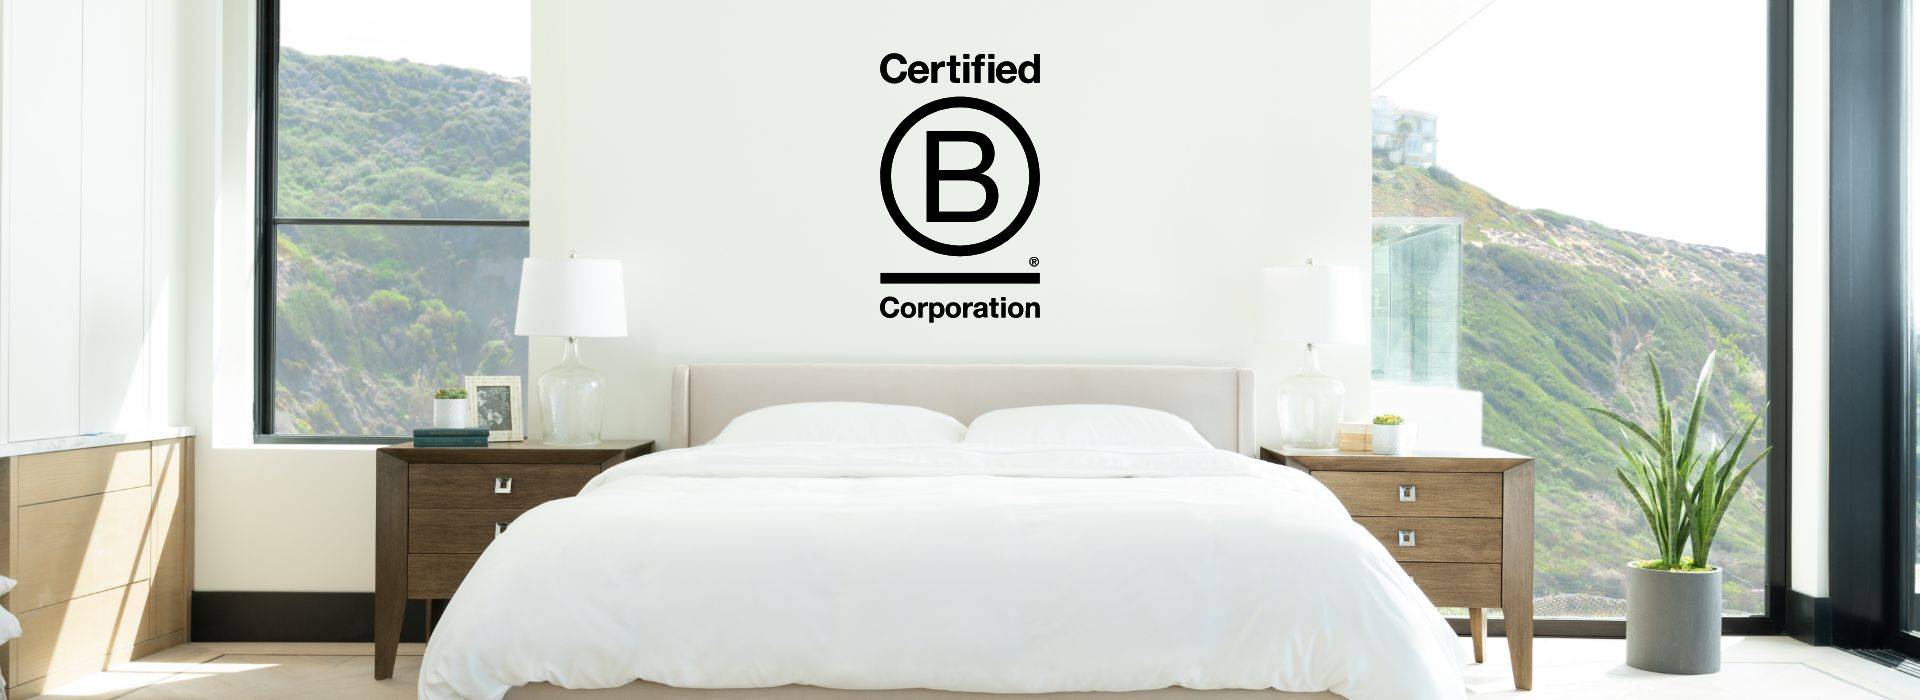 Zertifiziertes B-Unternehmen